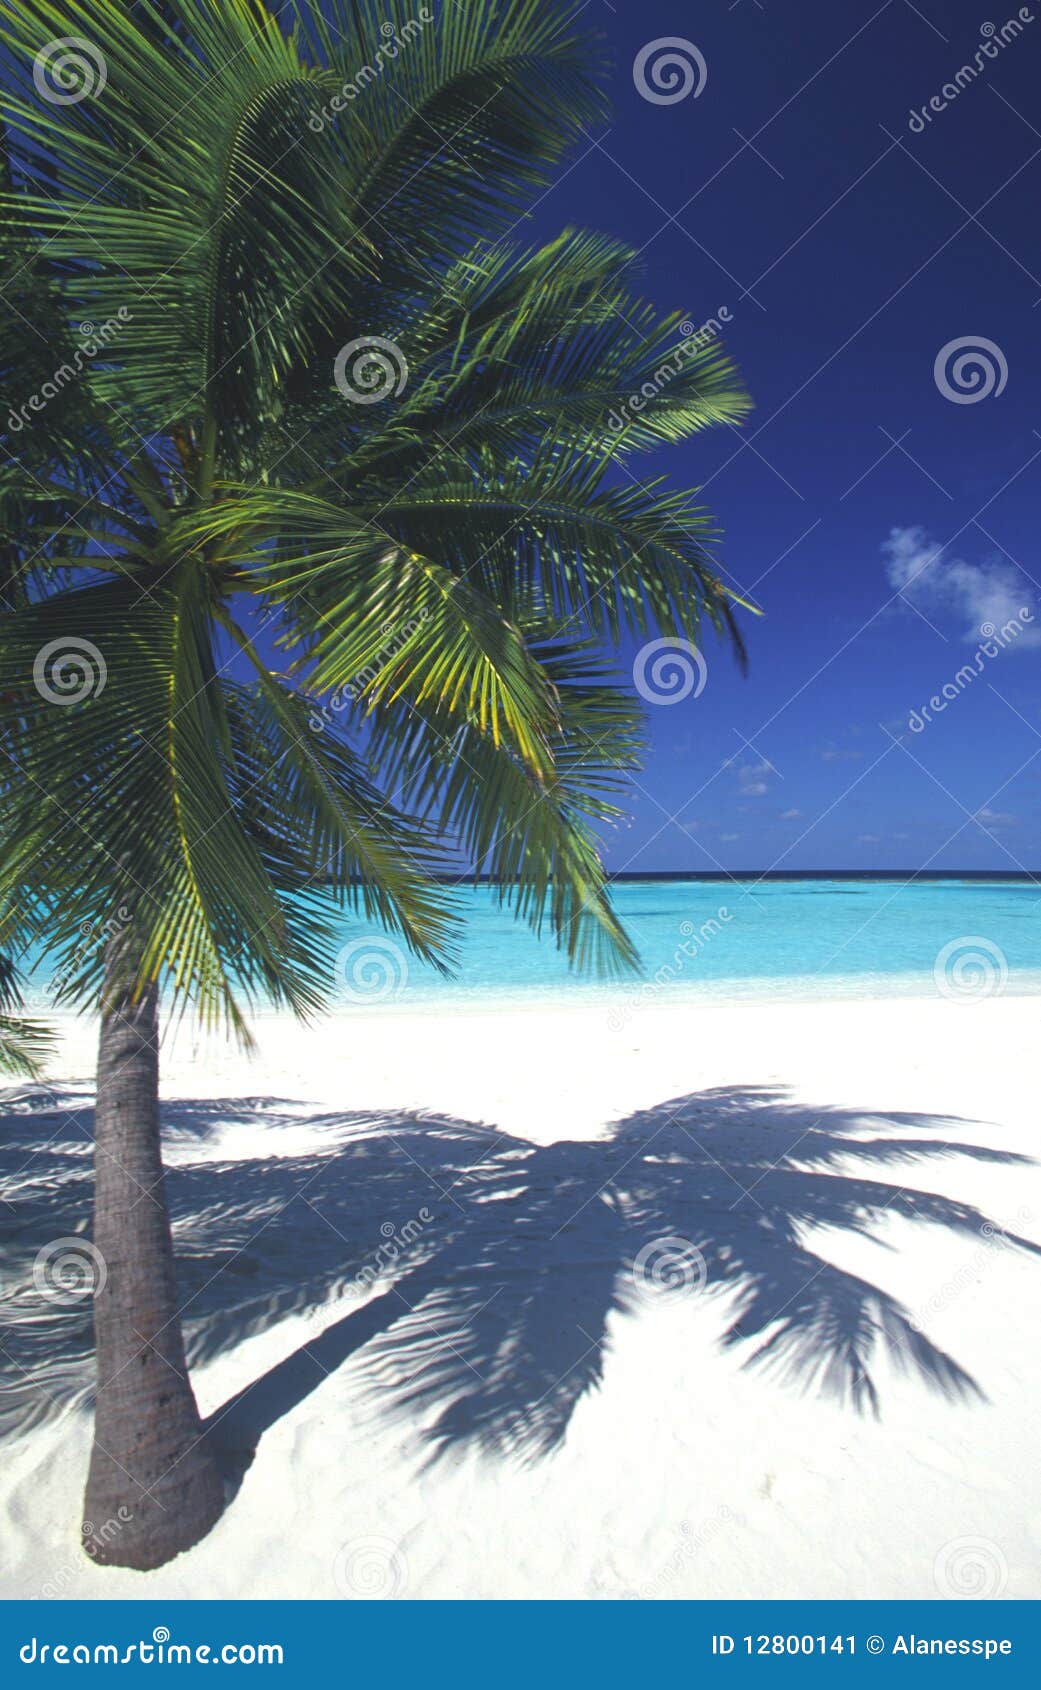 maldives idyllic beach